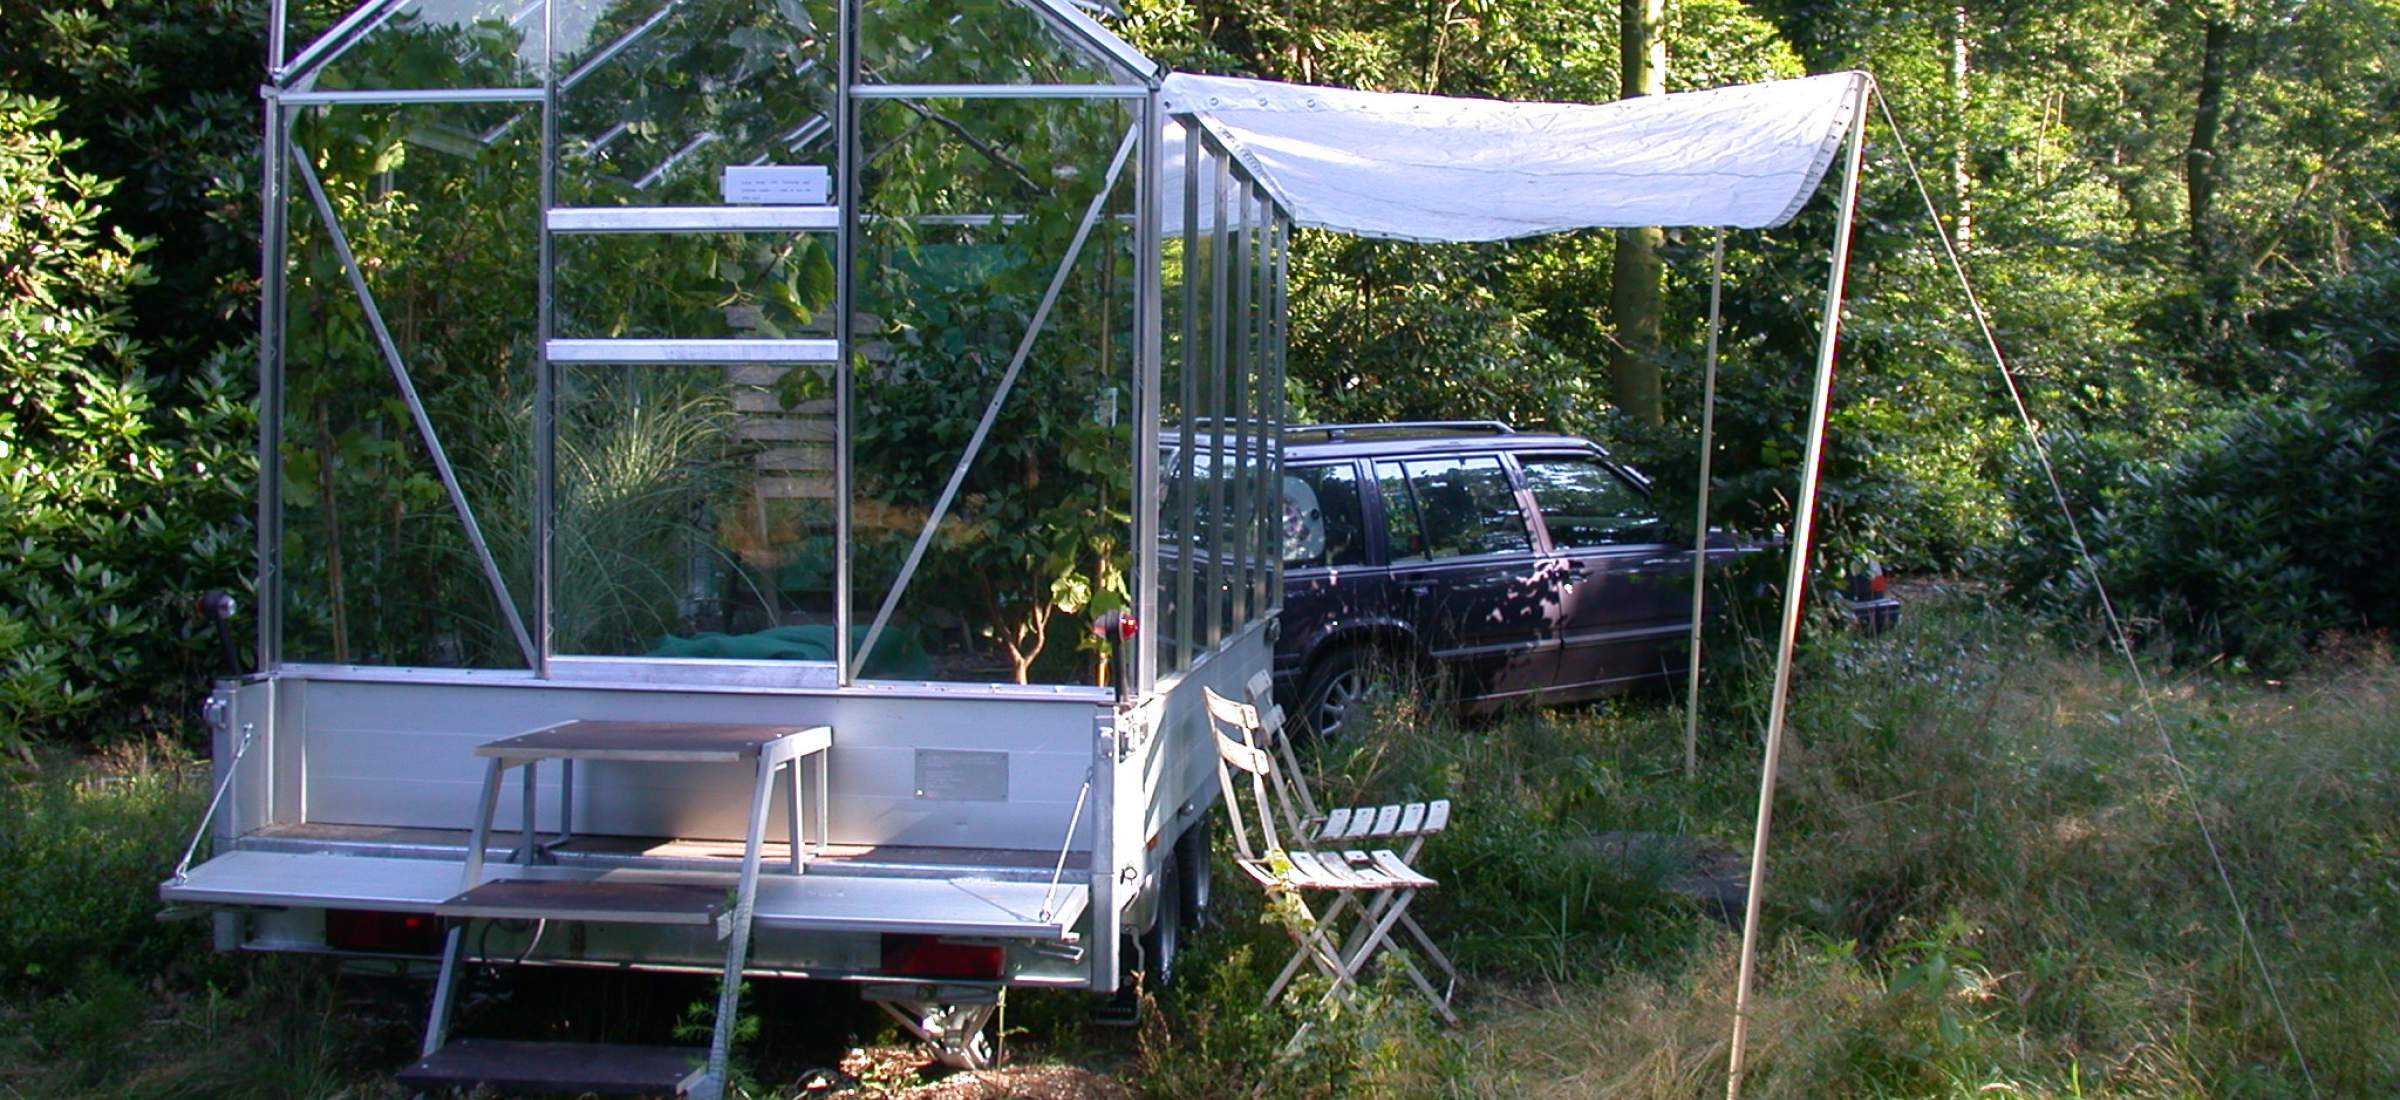 LANDLAB 2002 Triennale Mobile greenhouse by Ed Joosting Bunk